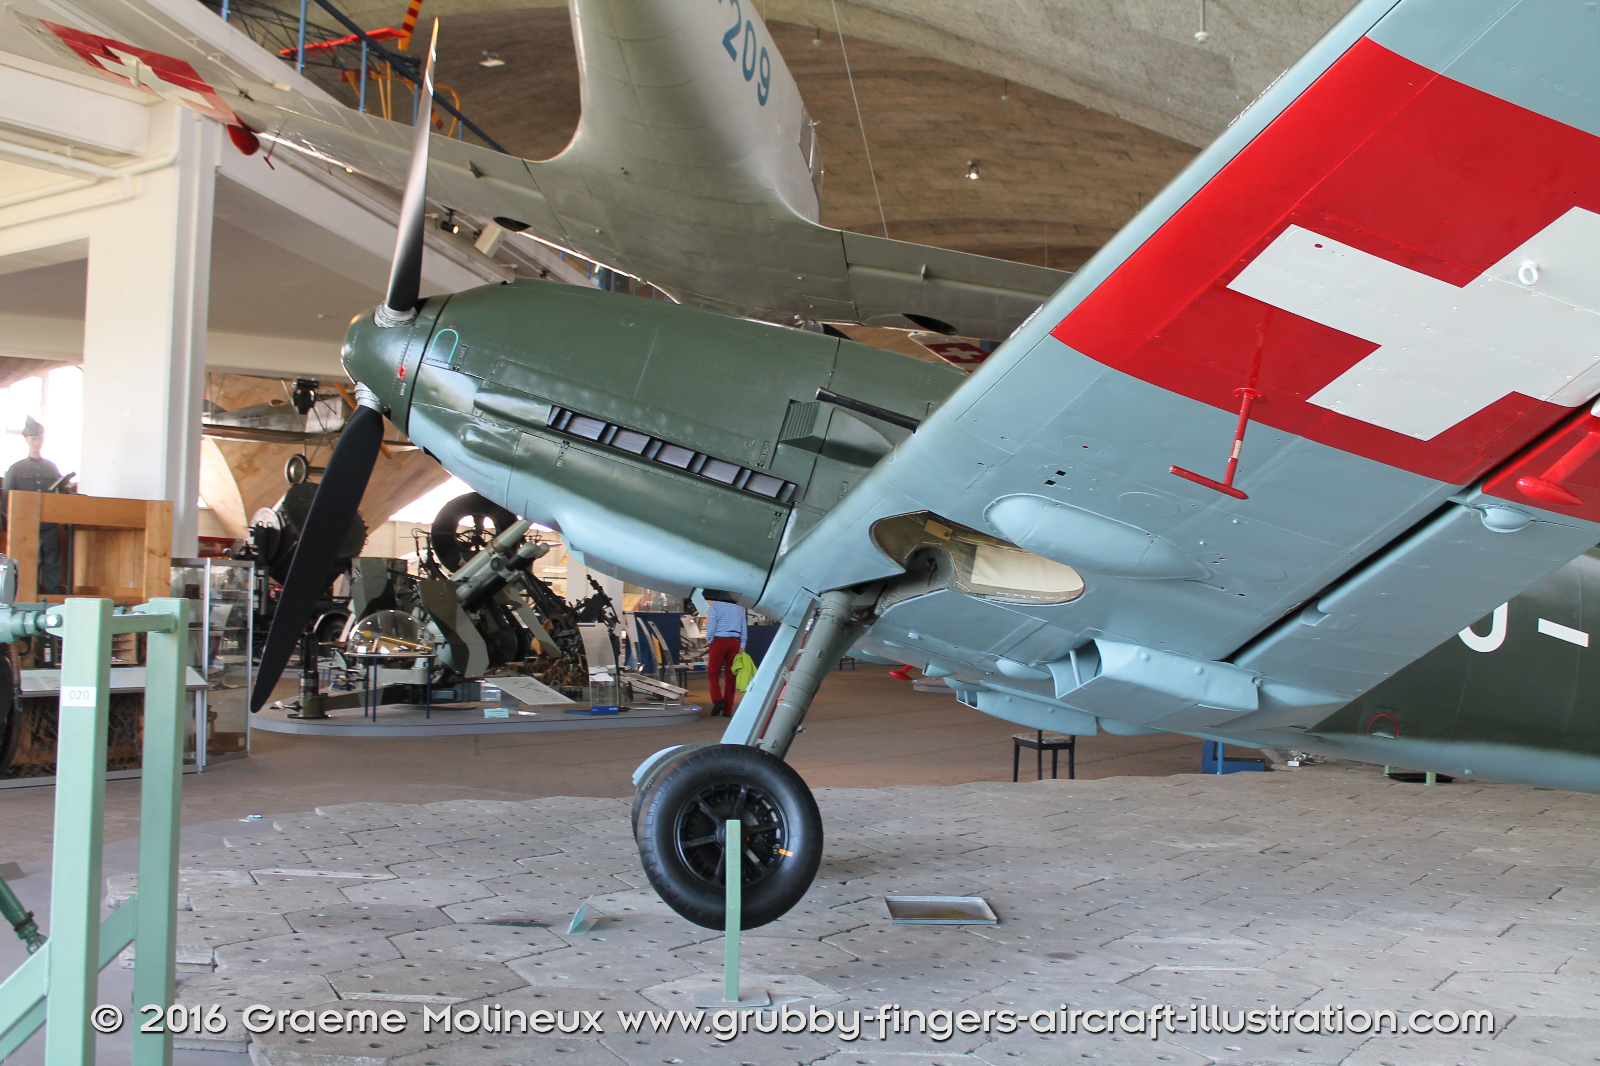 MESSERSCHMITT_BF_109E_J-355_Swiss_Air_Force_Museum_2015_12_GrubbyFingers